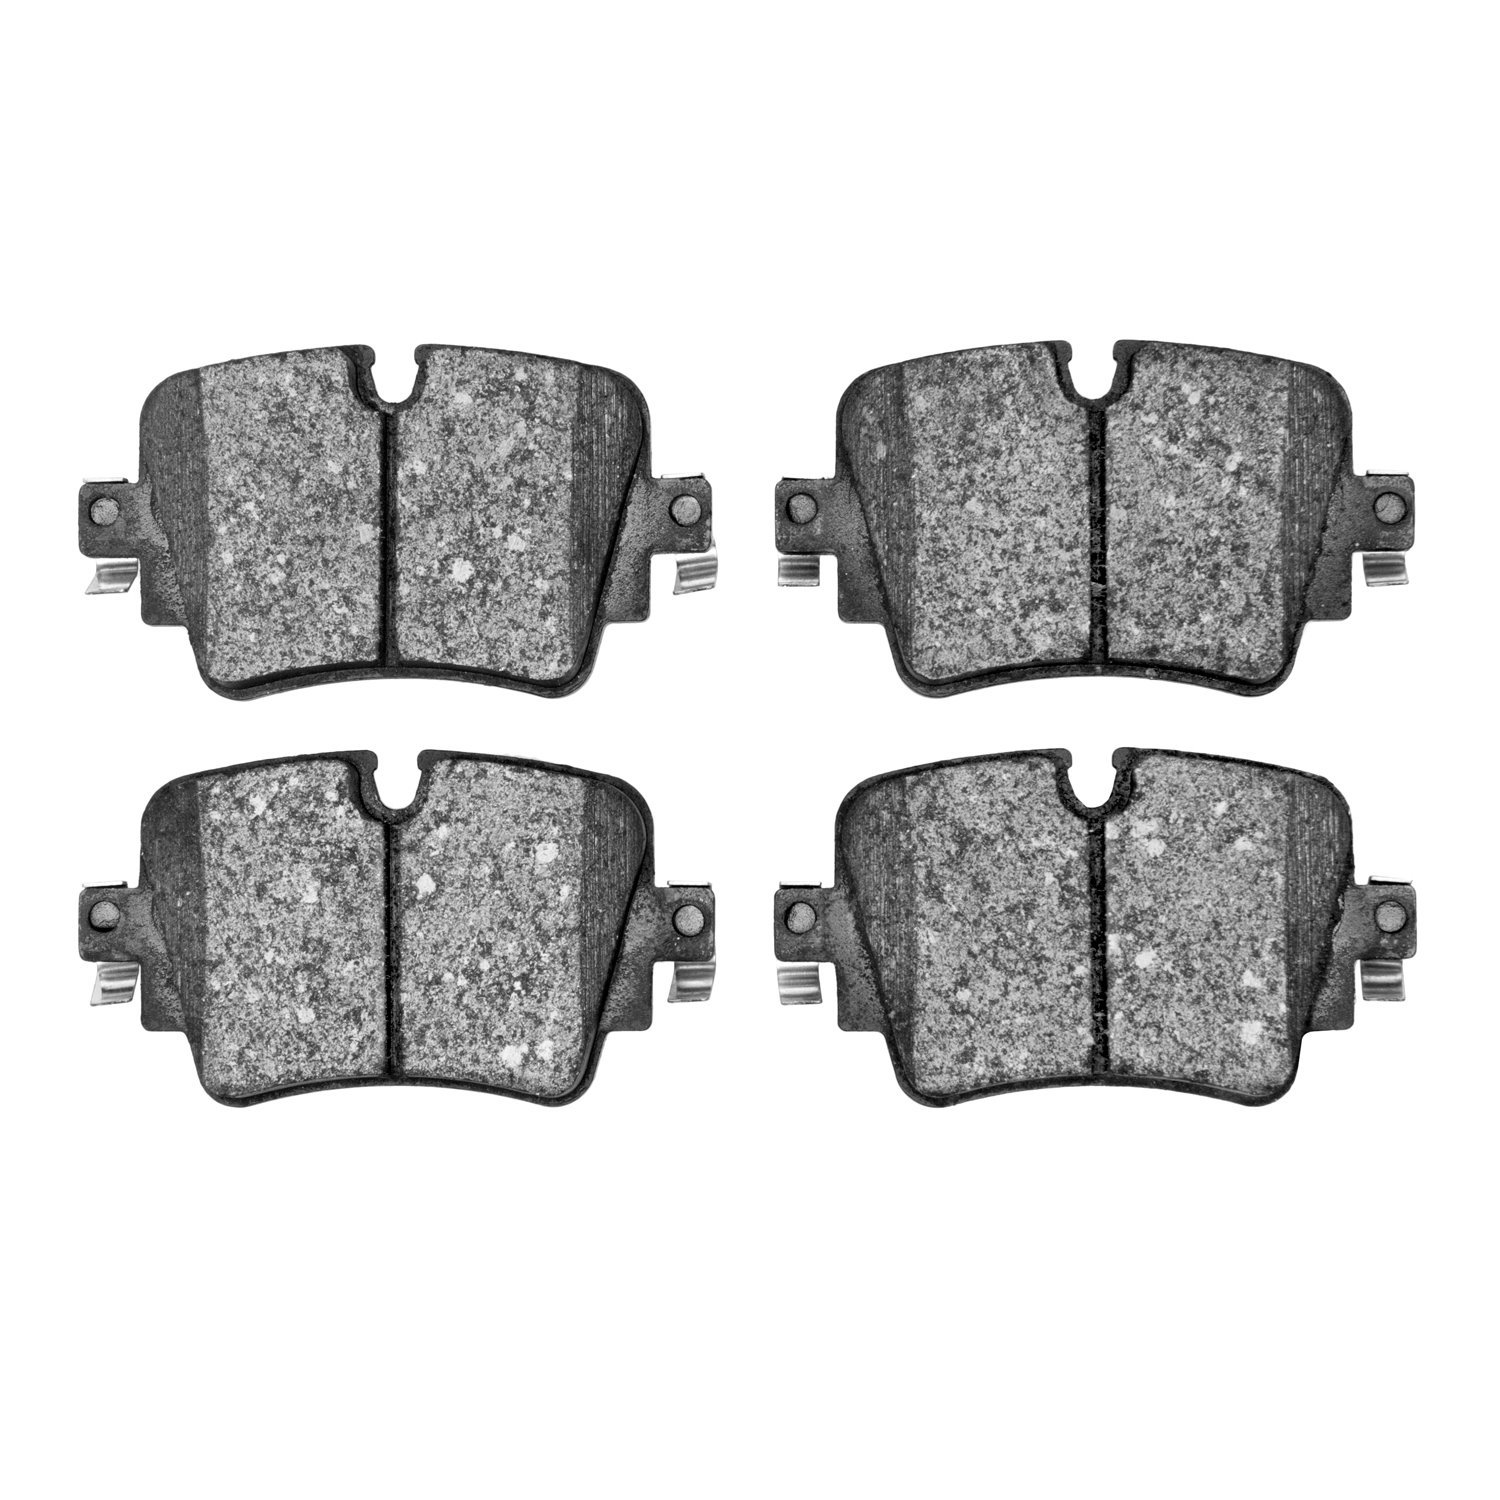 1310-1752-00 3000-Series Ceramic Brake Pads, 2014-2021 Jaguar, Position: Rear